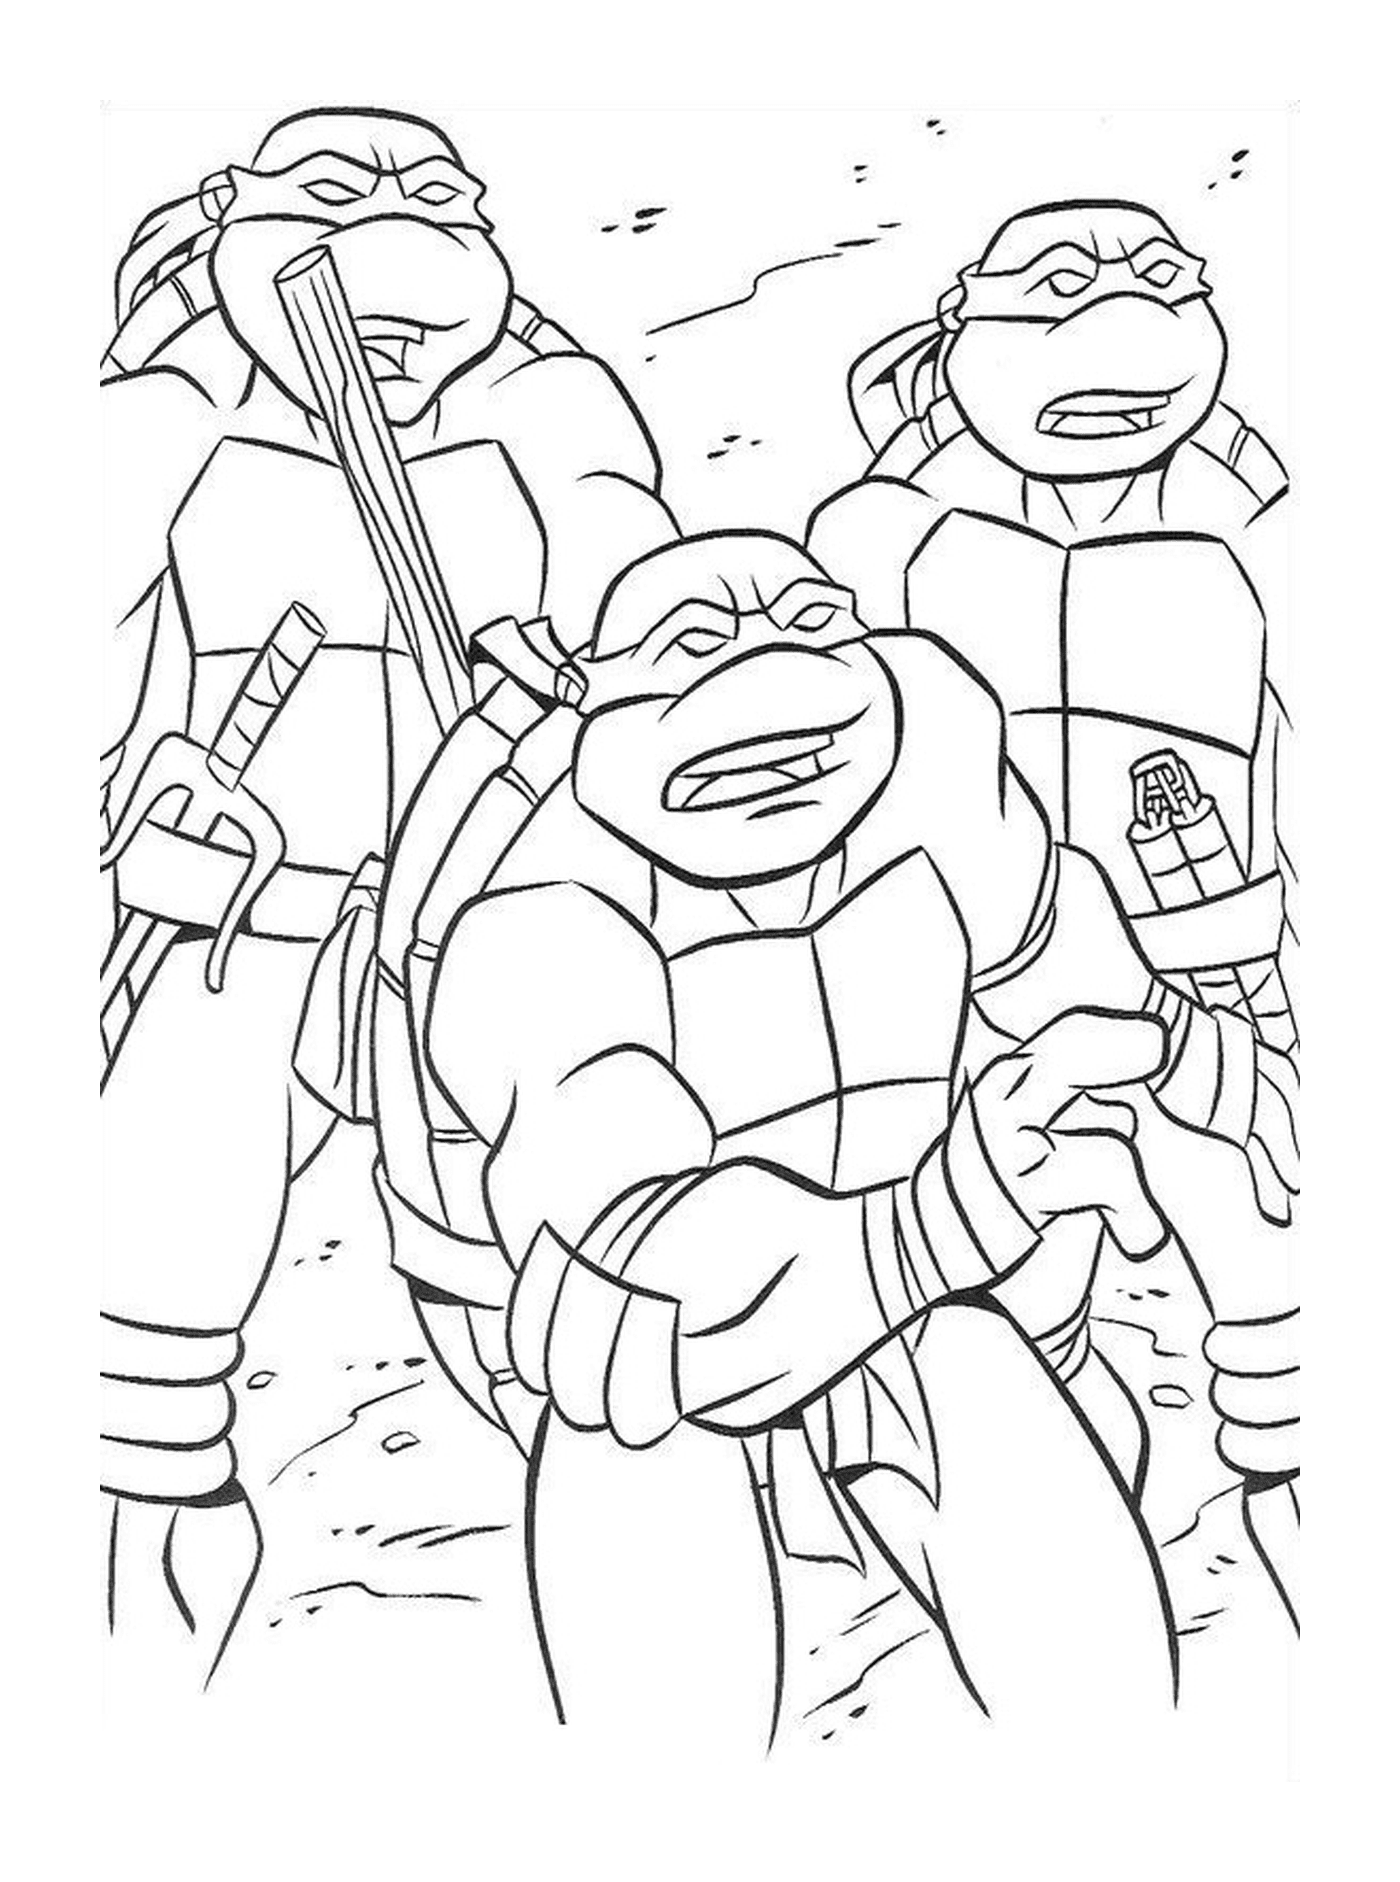  Group of solidarity ninja turtles 